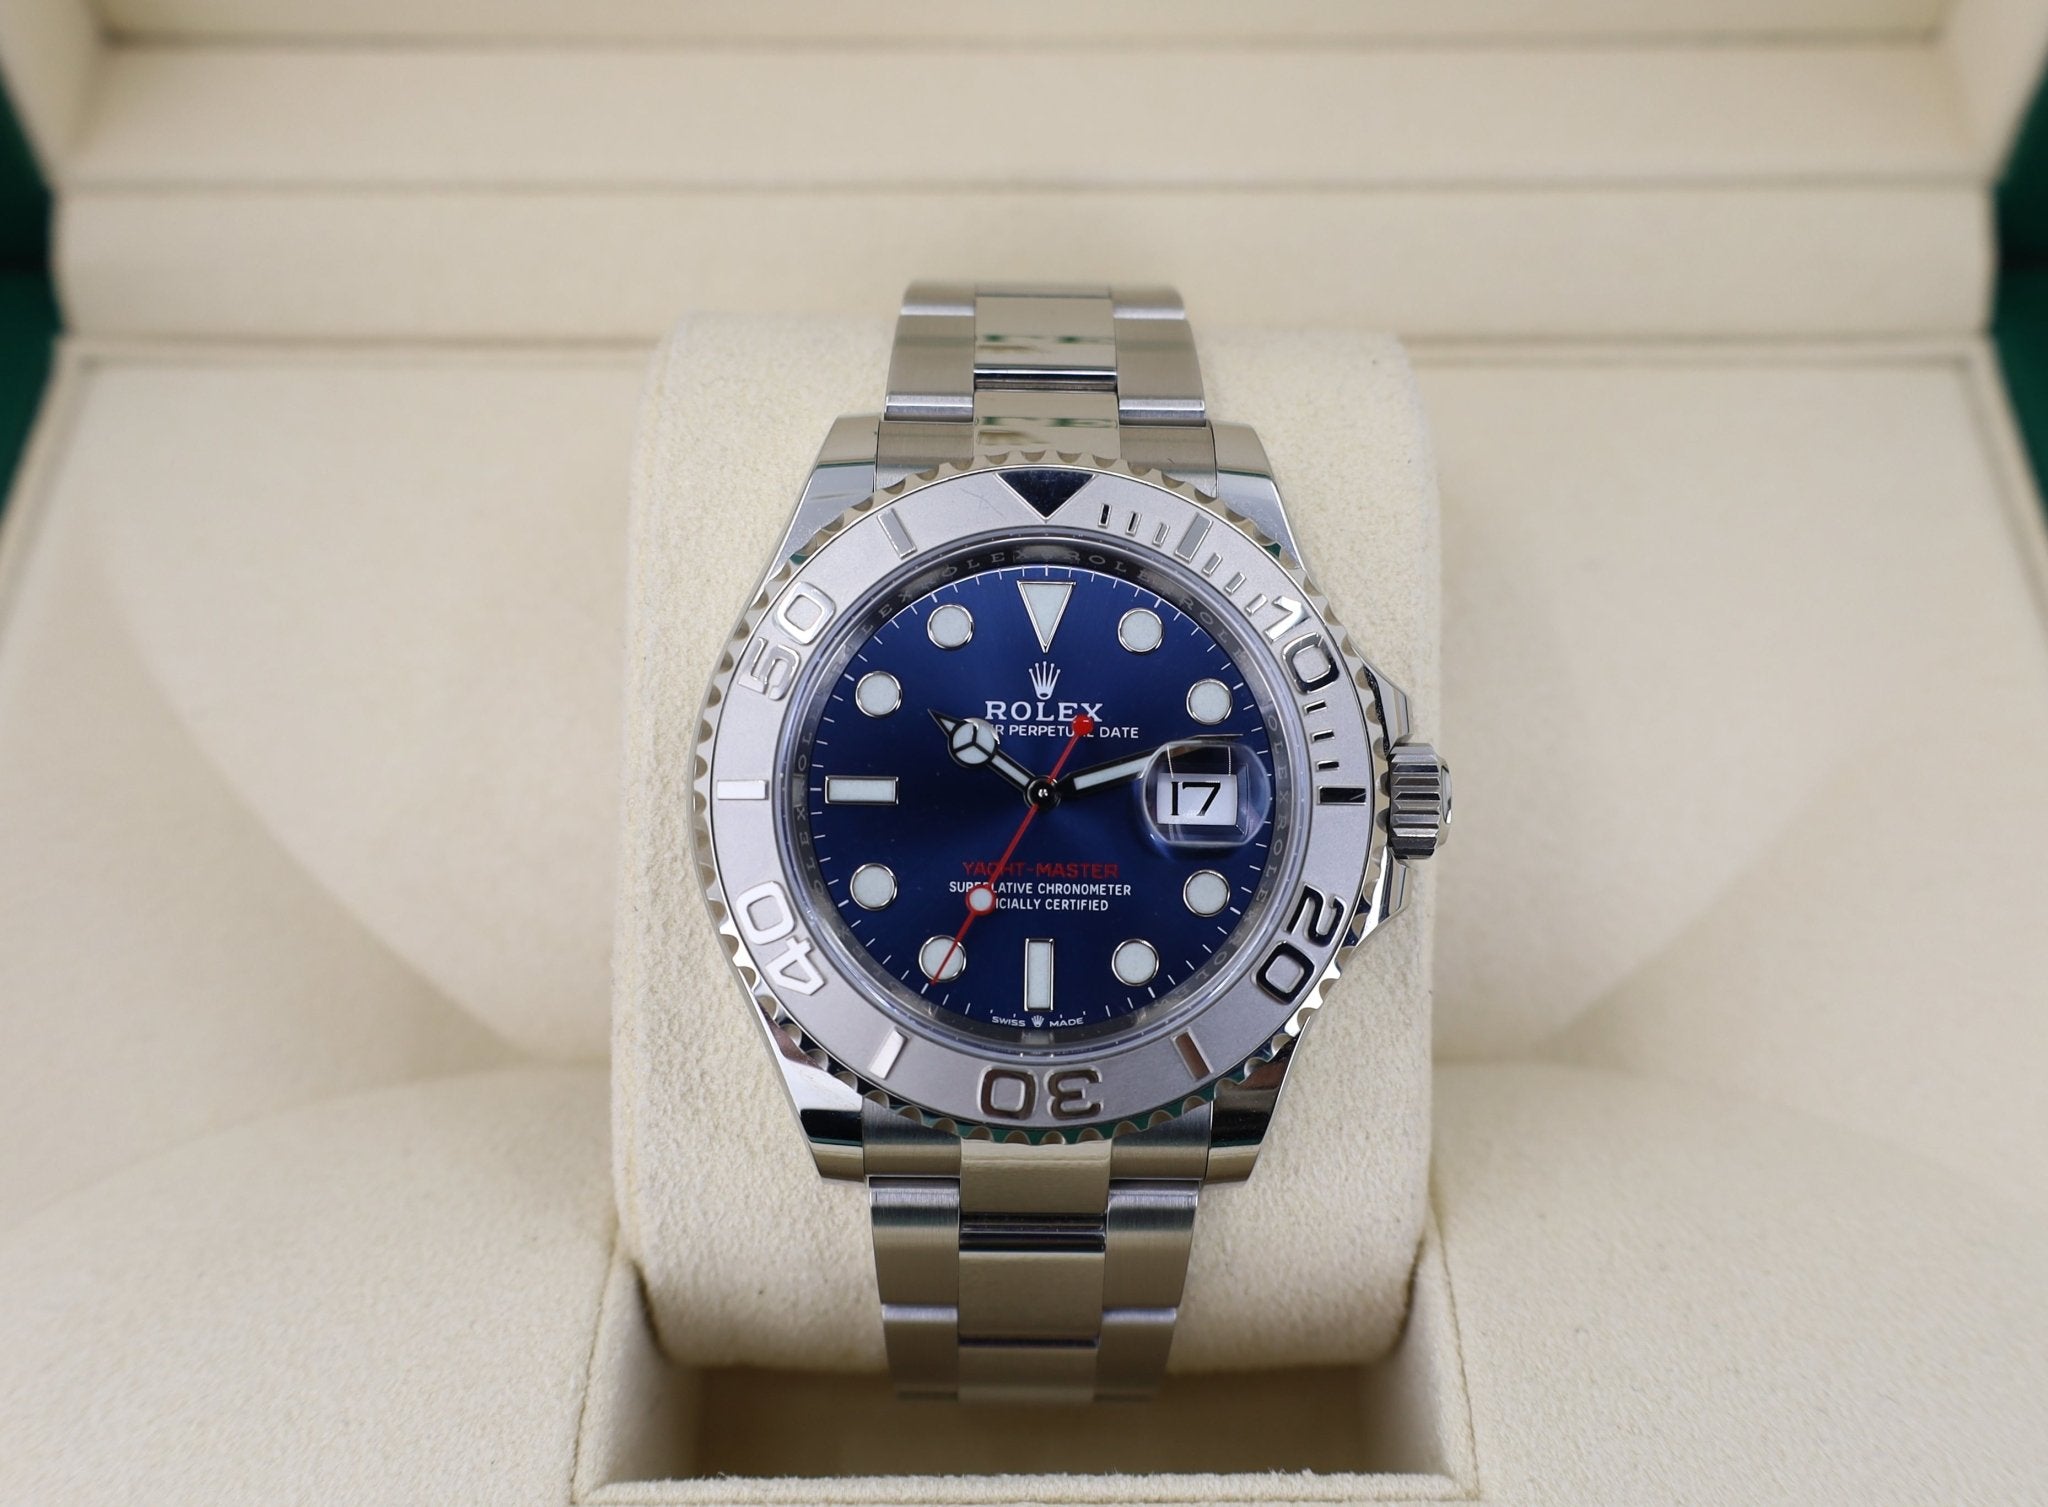 Rolex Yacht-Master 40 Two-Tone Platinum & Steel Watch - Blue